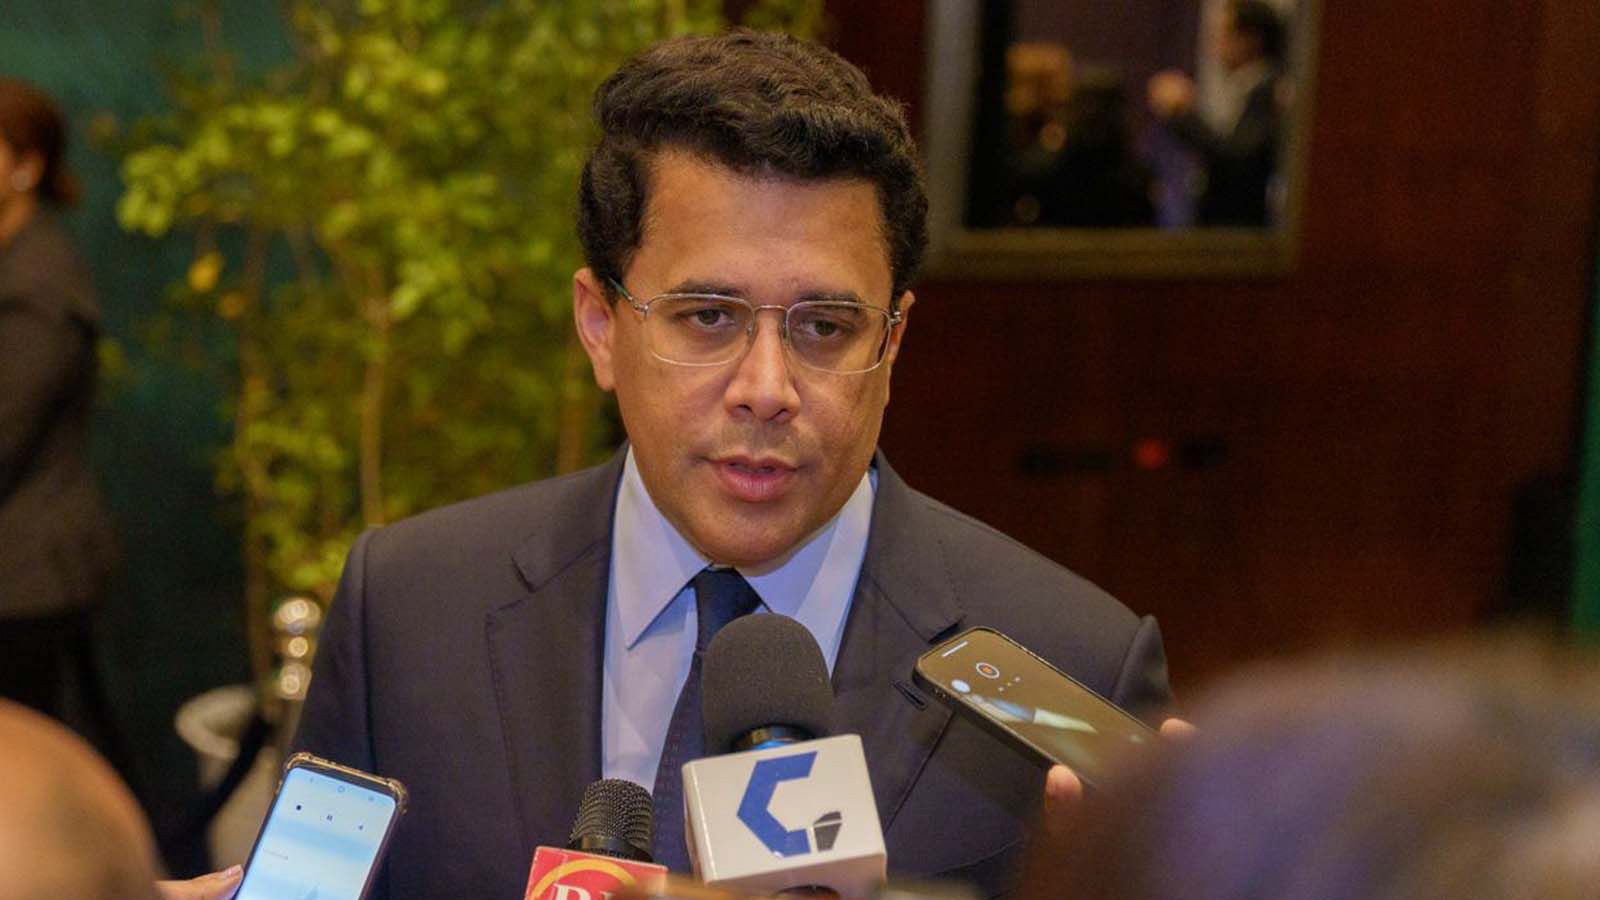 REPÚBLICA DOMINICANA: Ministro David Collado afirma trabaja junto con sector privado para convertir a RD en destino líder de turismo sostenible de la región